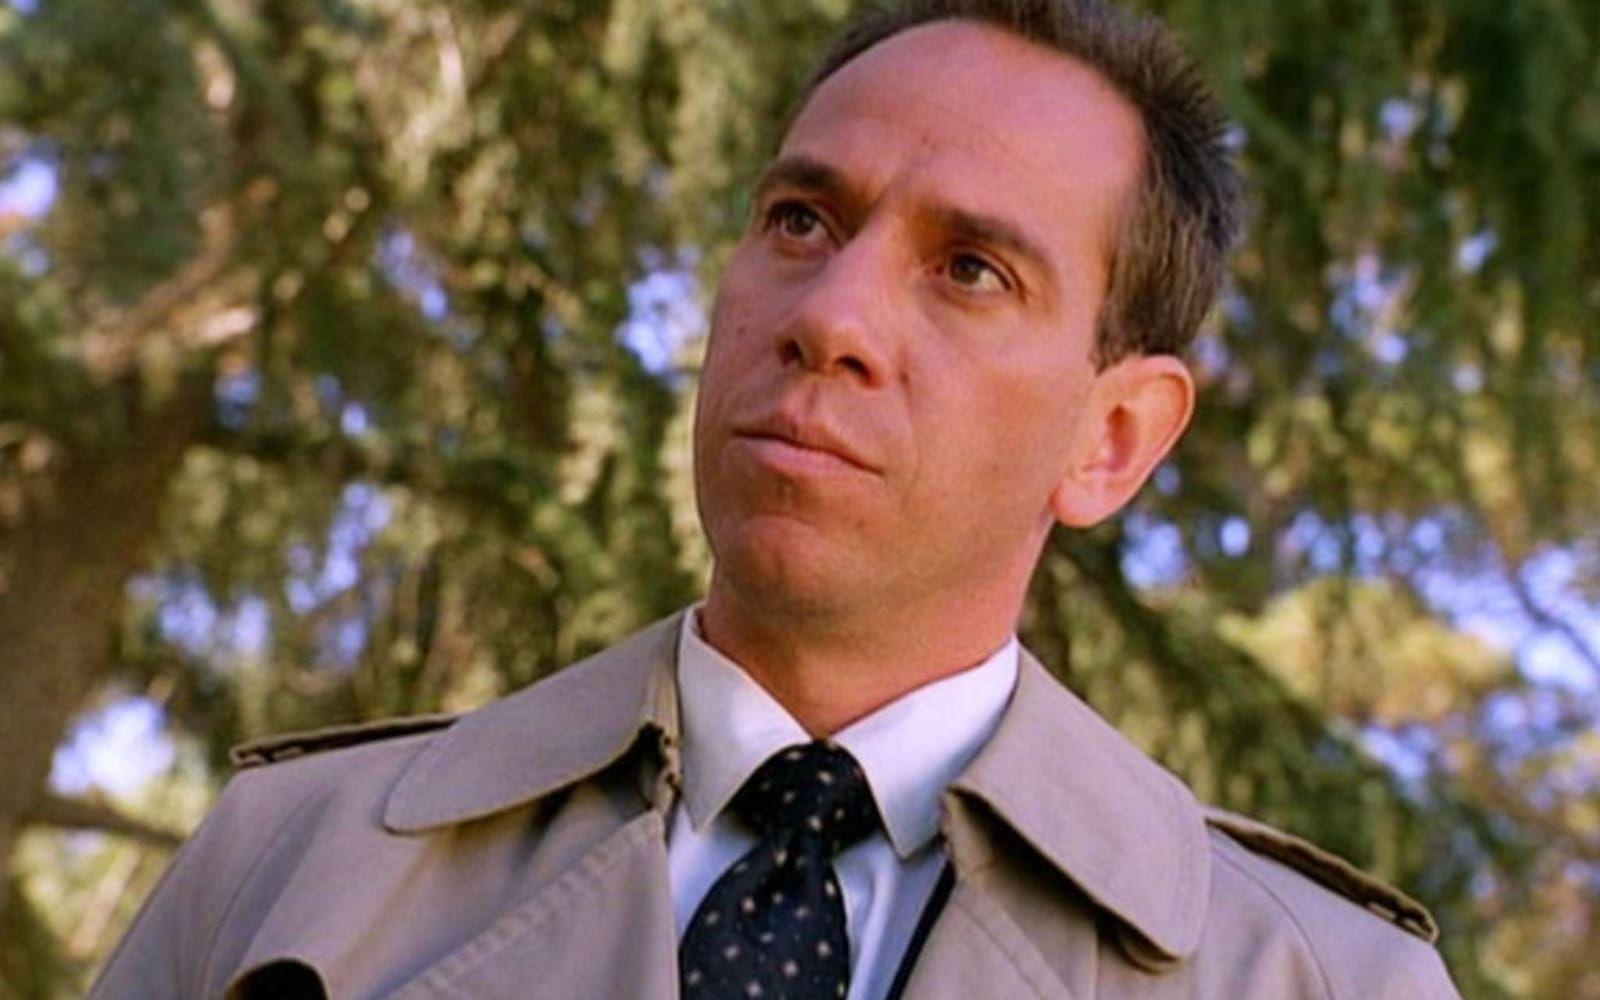 <strong>DÅ:</strong> Miguel Ferrer spelade den grinige FBI-agenten Albert Rosenfield som kommer på kant med Sheriffen Truman, Dr Hayward, AndyŠ ja i stort sett hela stan. Ferrer är en veteran inom tv och film och hade bland annat en framträdande roll i Robocop (1987).